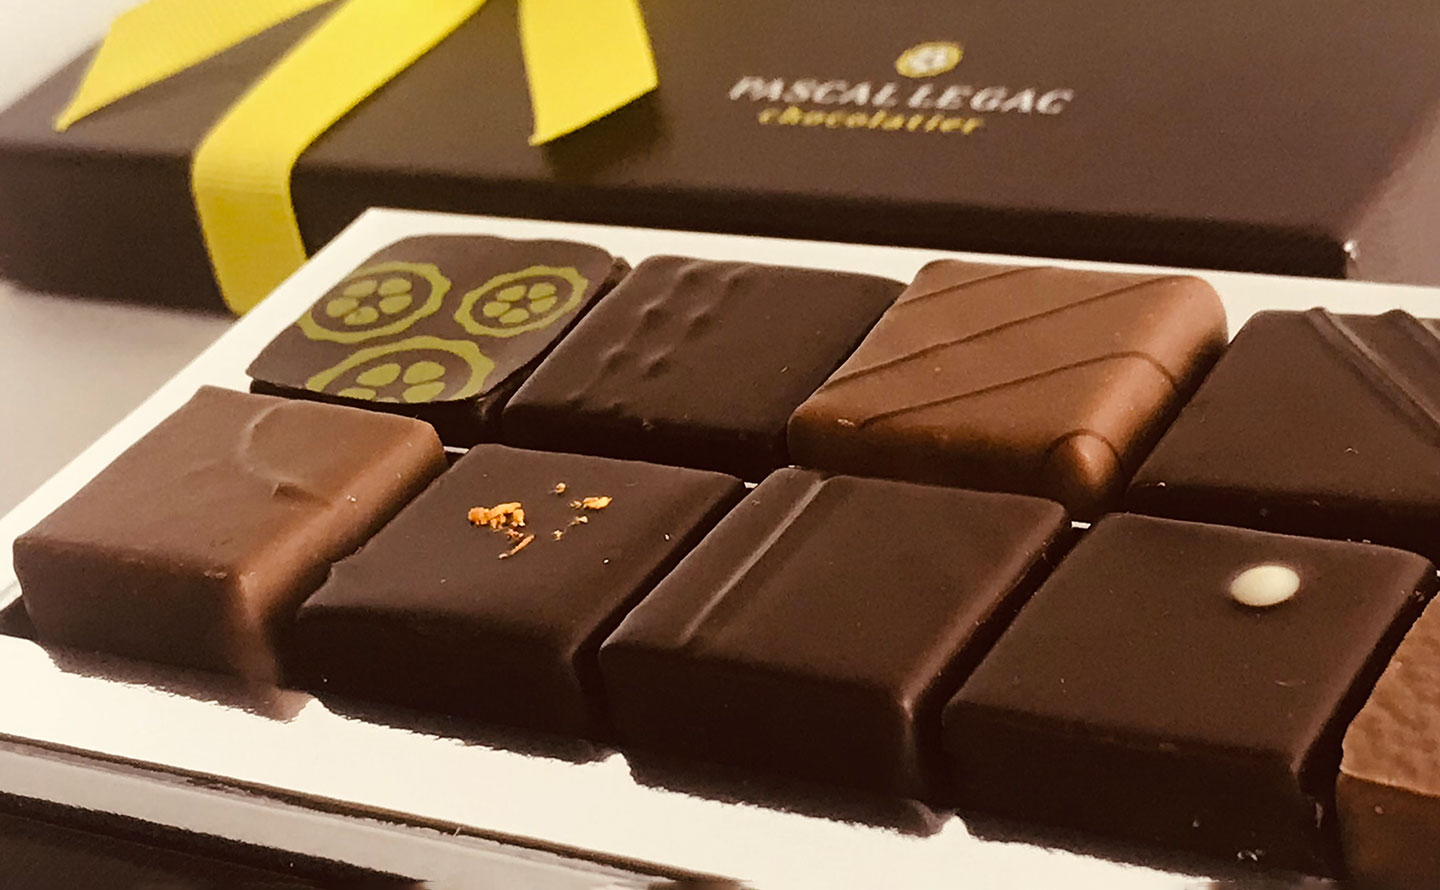 Chocolats Pascal le Gac